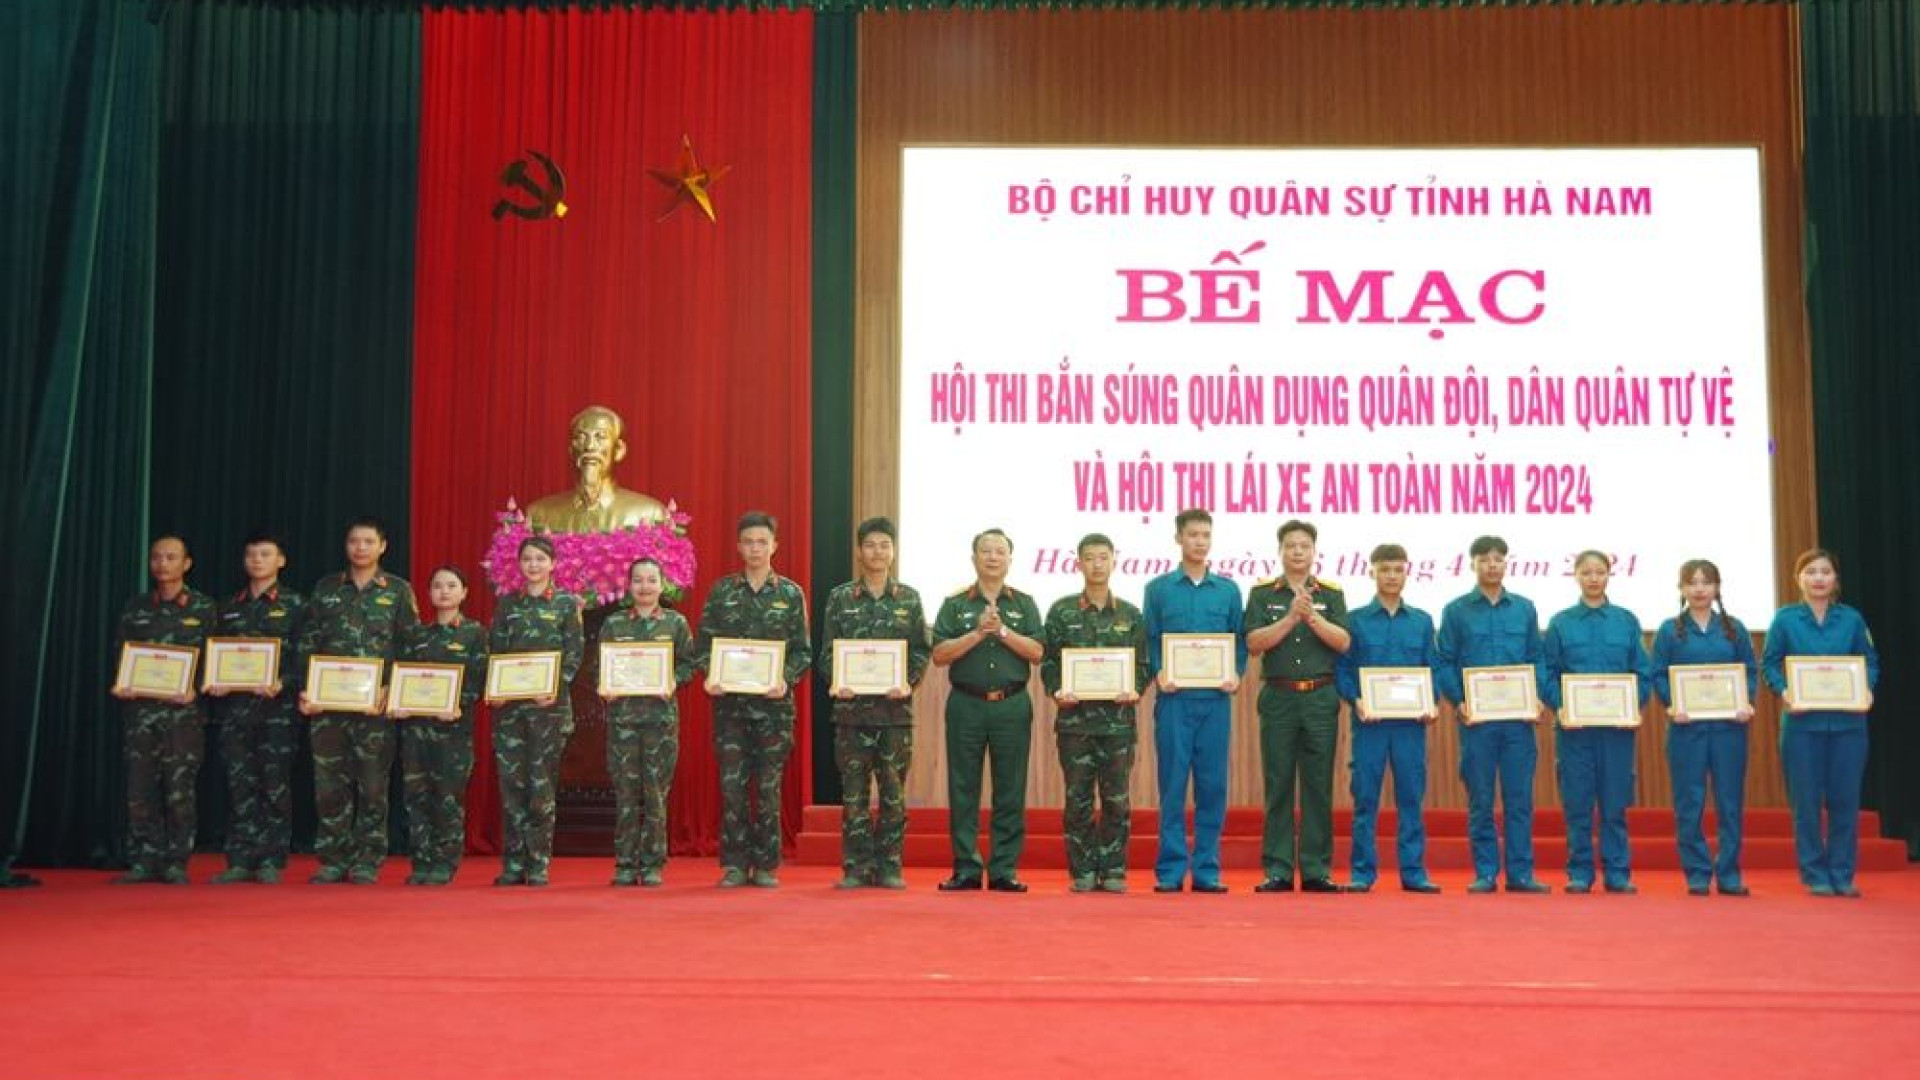 Bộ CHQS tỉnh Hà Nam bế mạc Hội thi bắn súng quân dụng quân đội, dân quân tự vệ và Hội thi lái xe an toàn năm 2024